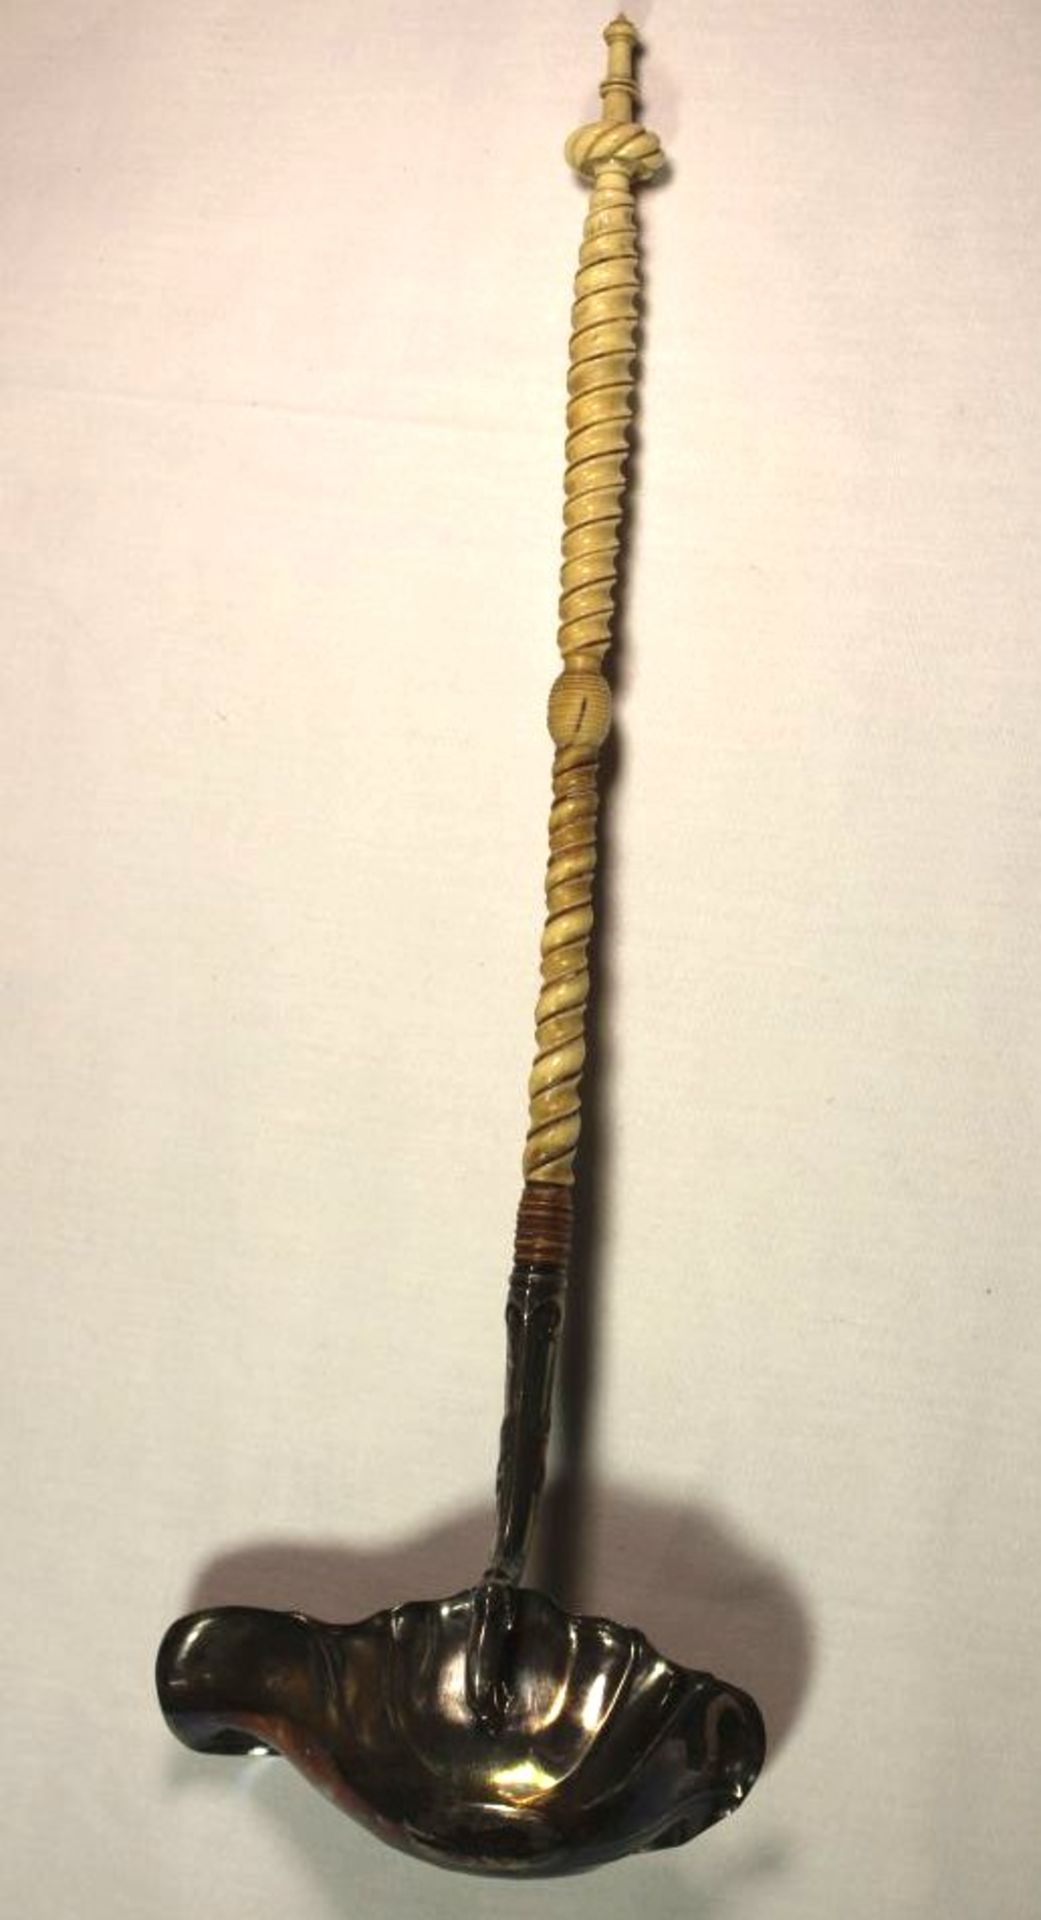 Bowlenkelle, 19. Jhd., Silber mit Beingriff, Griff mit Alters-u. Gebrauchsspuren (div. - Bild 3 aus 5